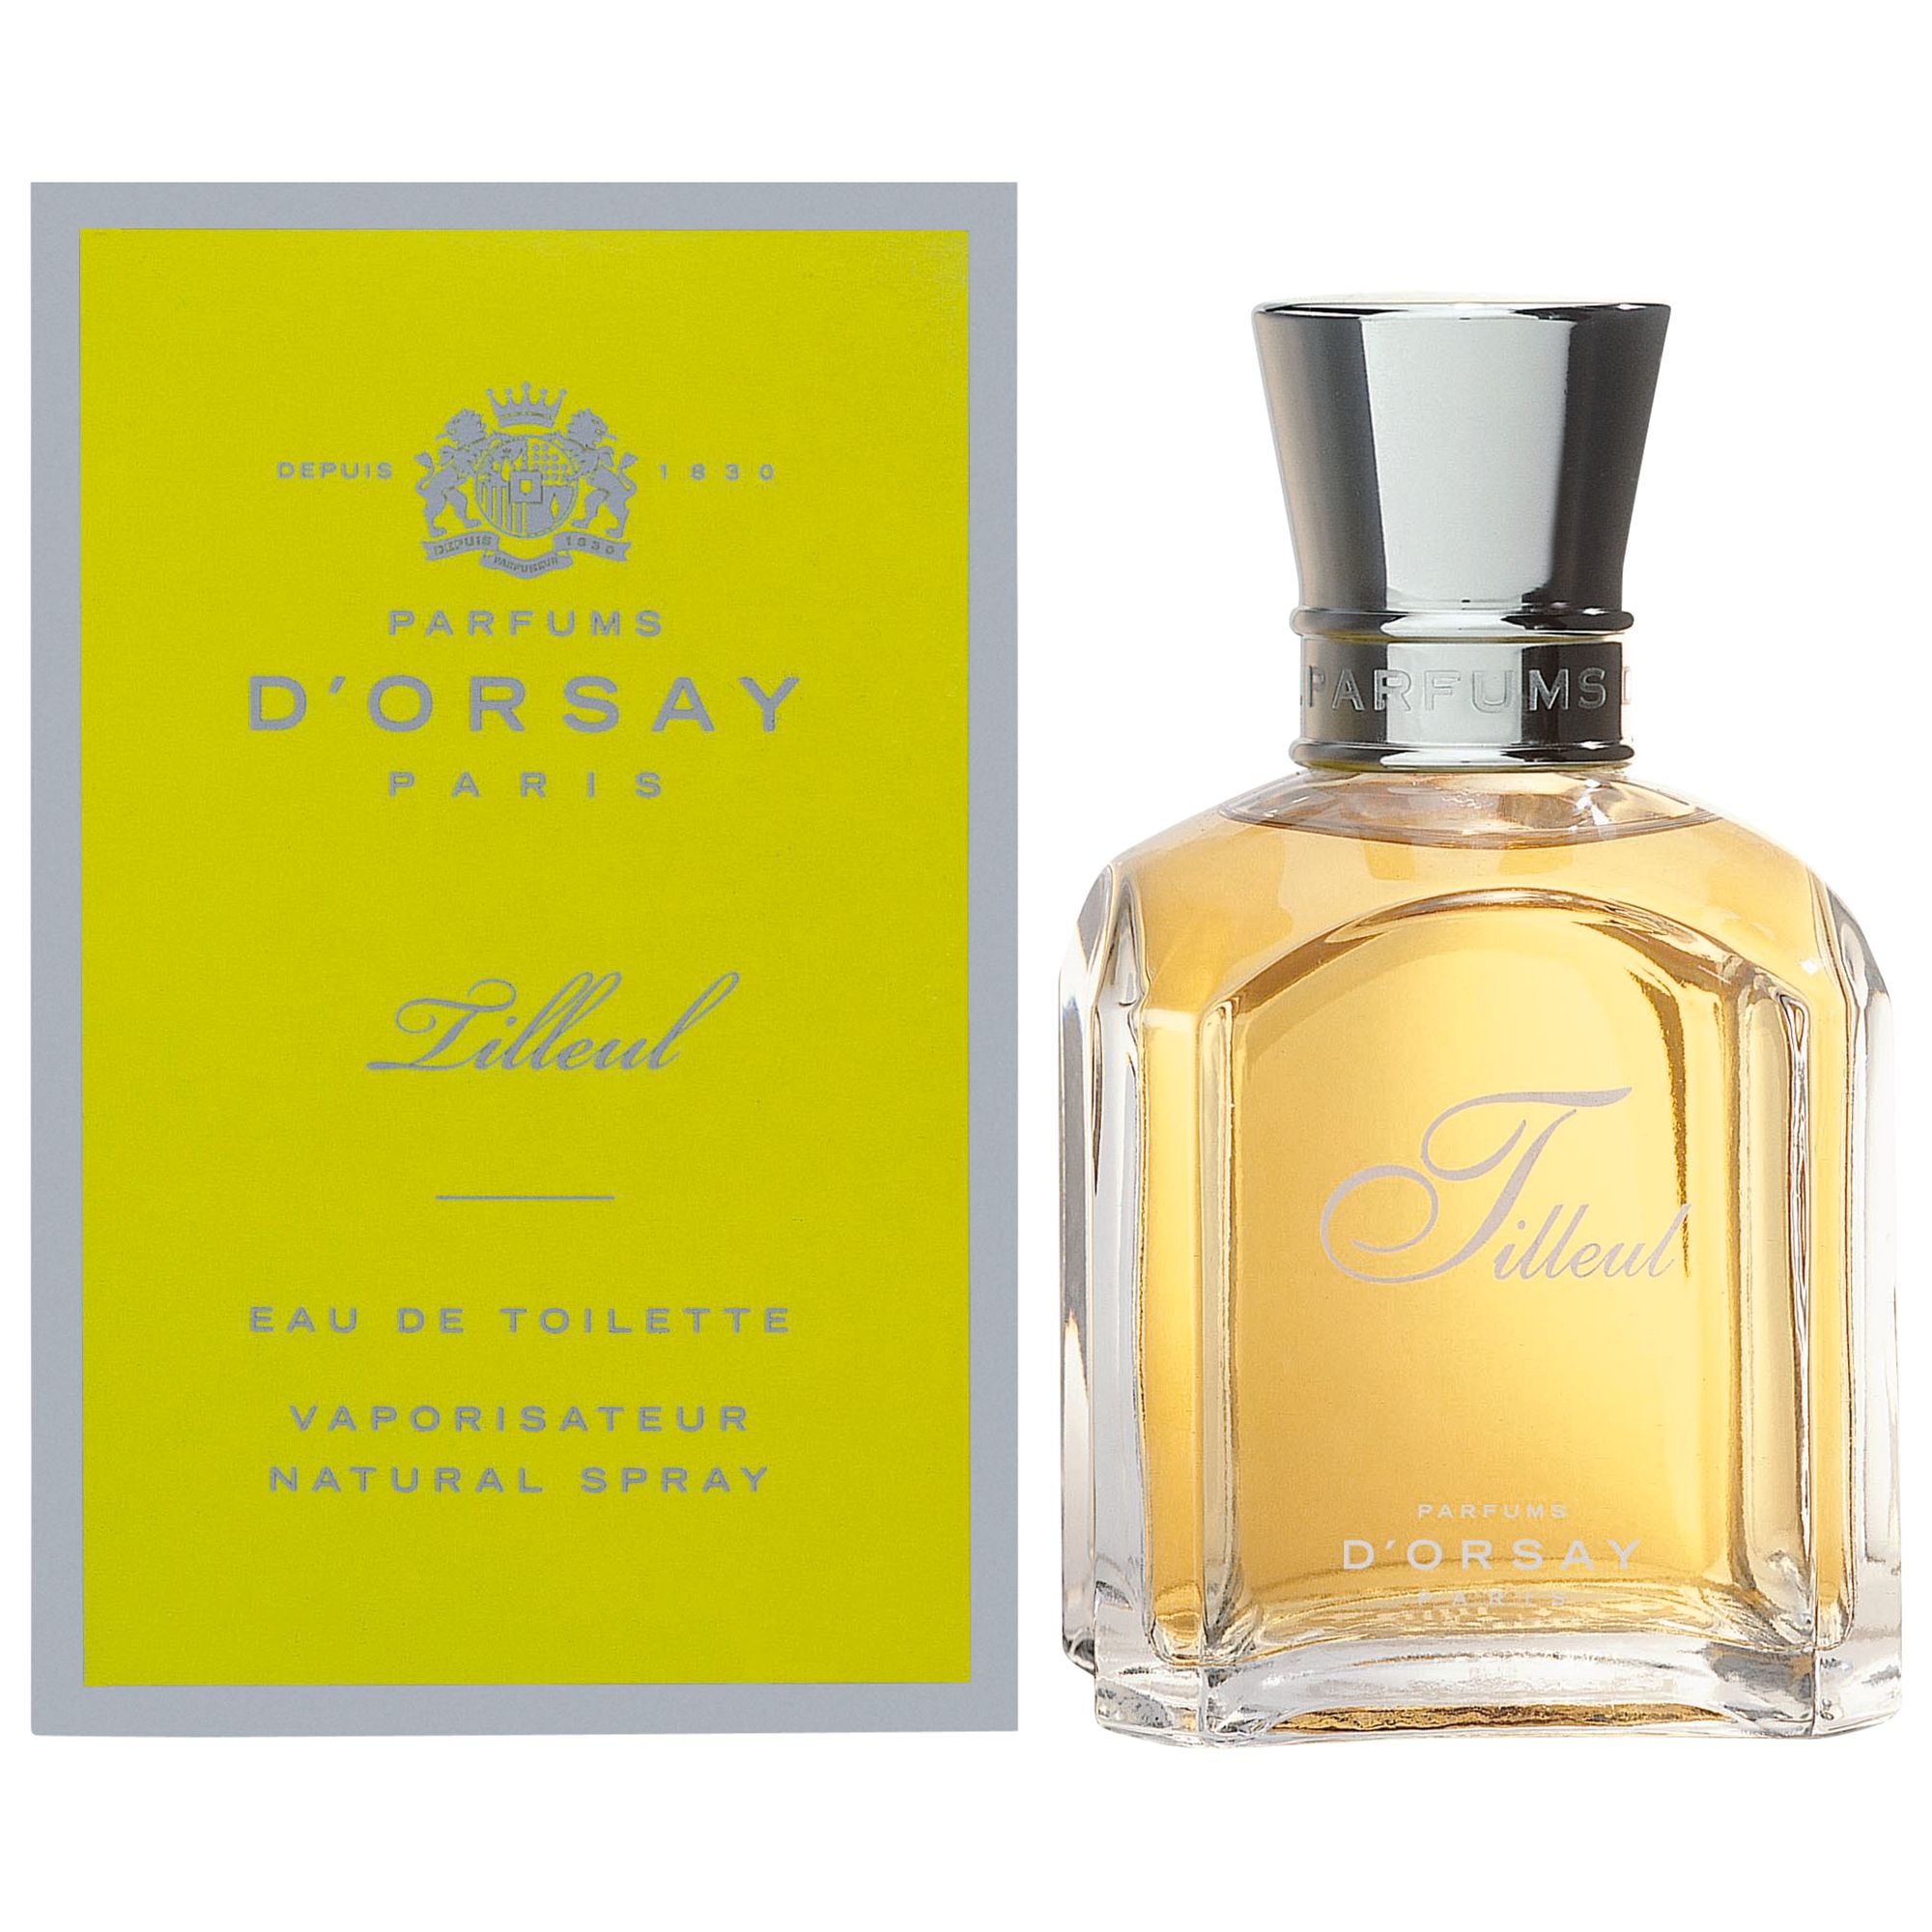 Parfum D'Orsay Tilleul Eau de Toilette, 50ml at John Lewis & Partners